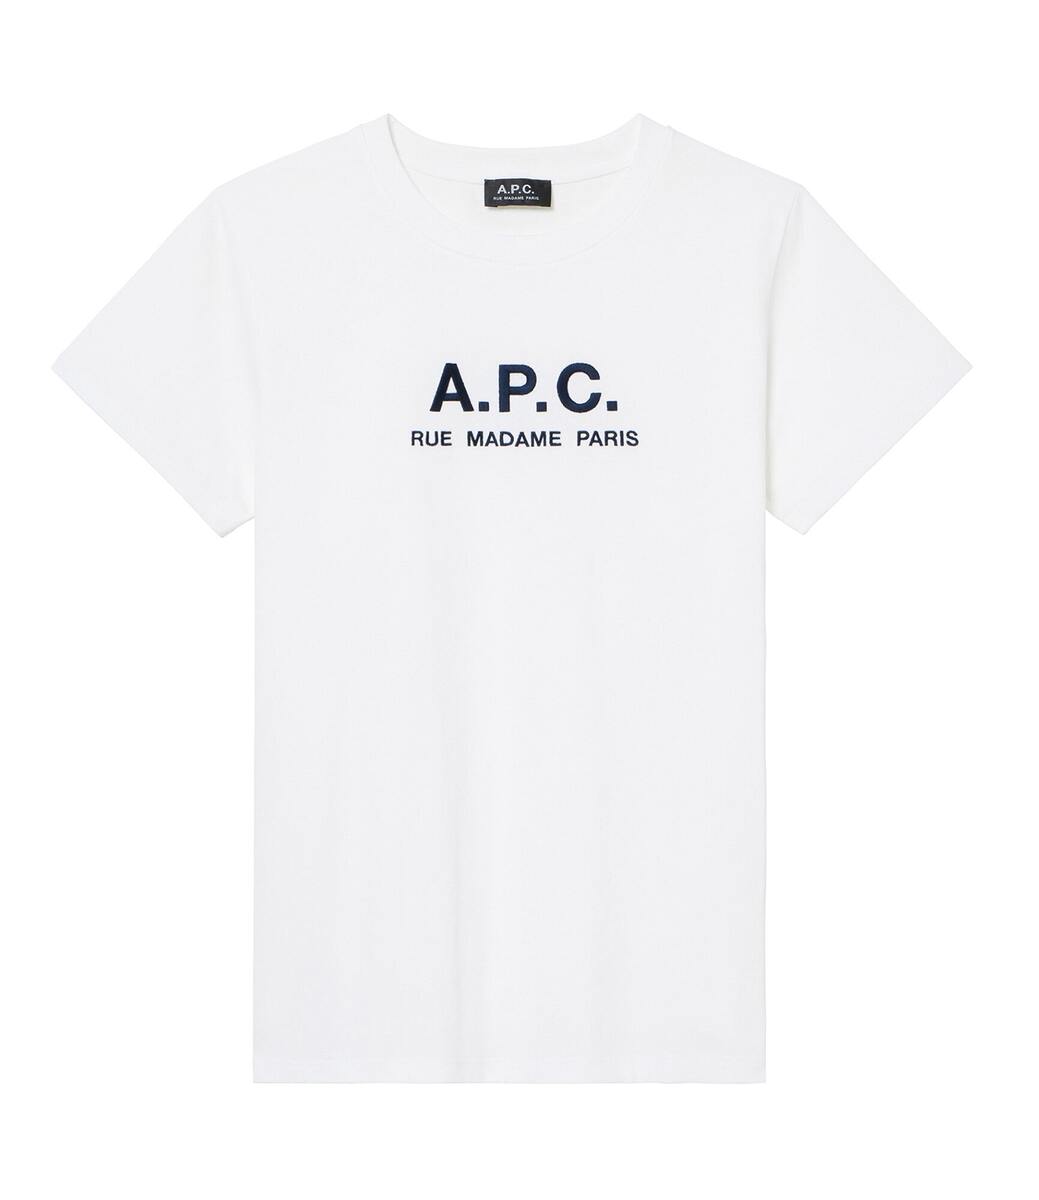 【スプリングフェア10 off】 A.P.C. Rue Madame femme Tシャツ アーペーセー 定番 人気 日本製